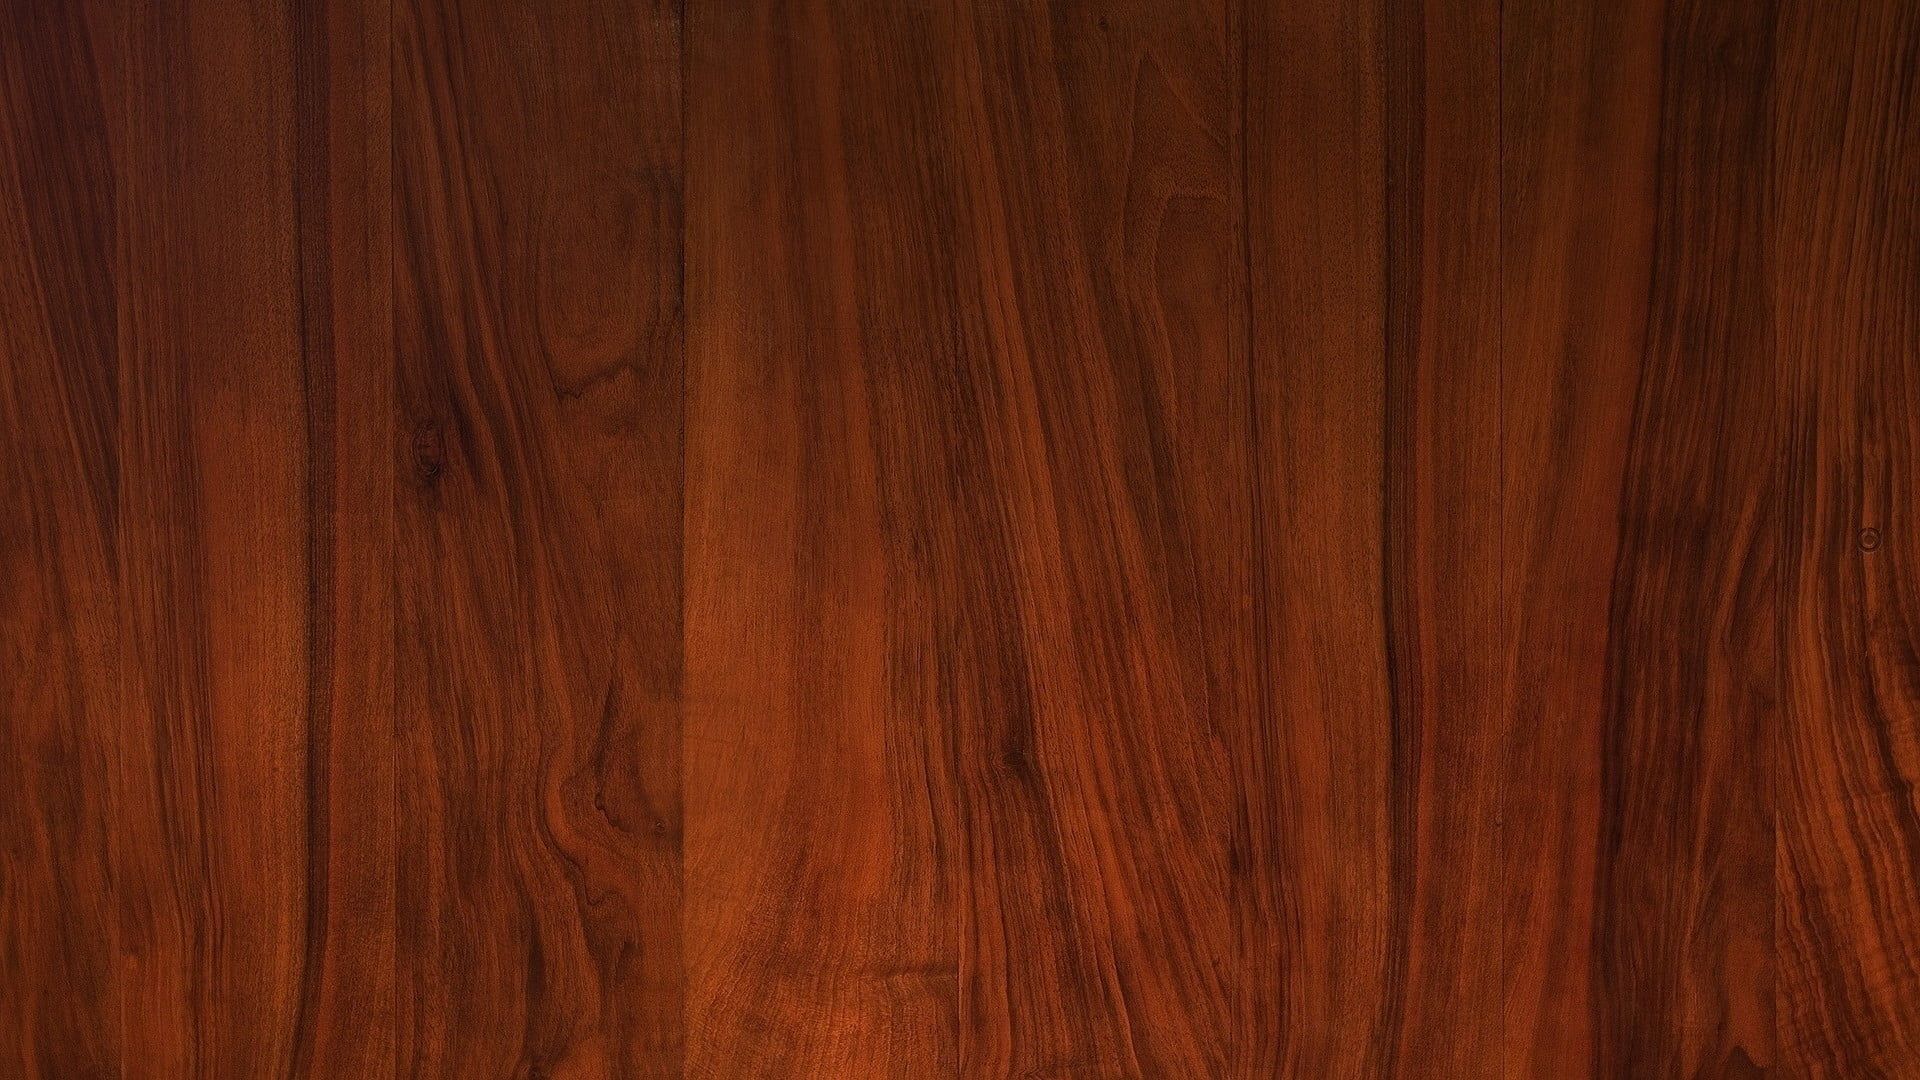 Brown Wooden 2 Door Cabinet #wood #texture P #wallpaper